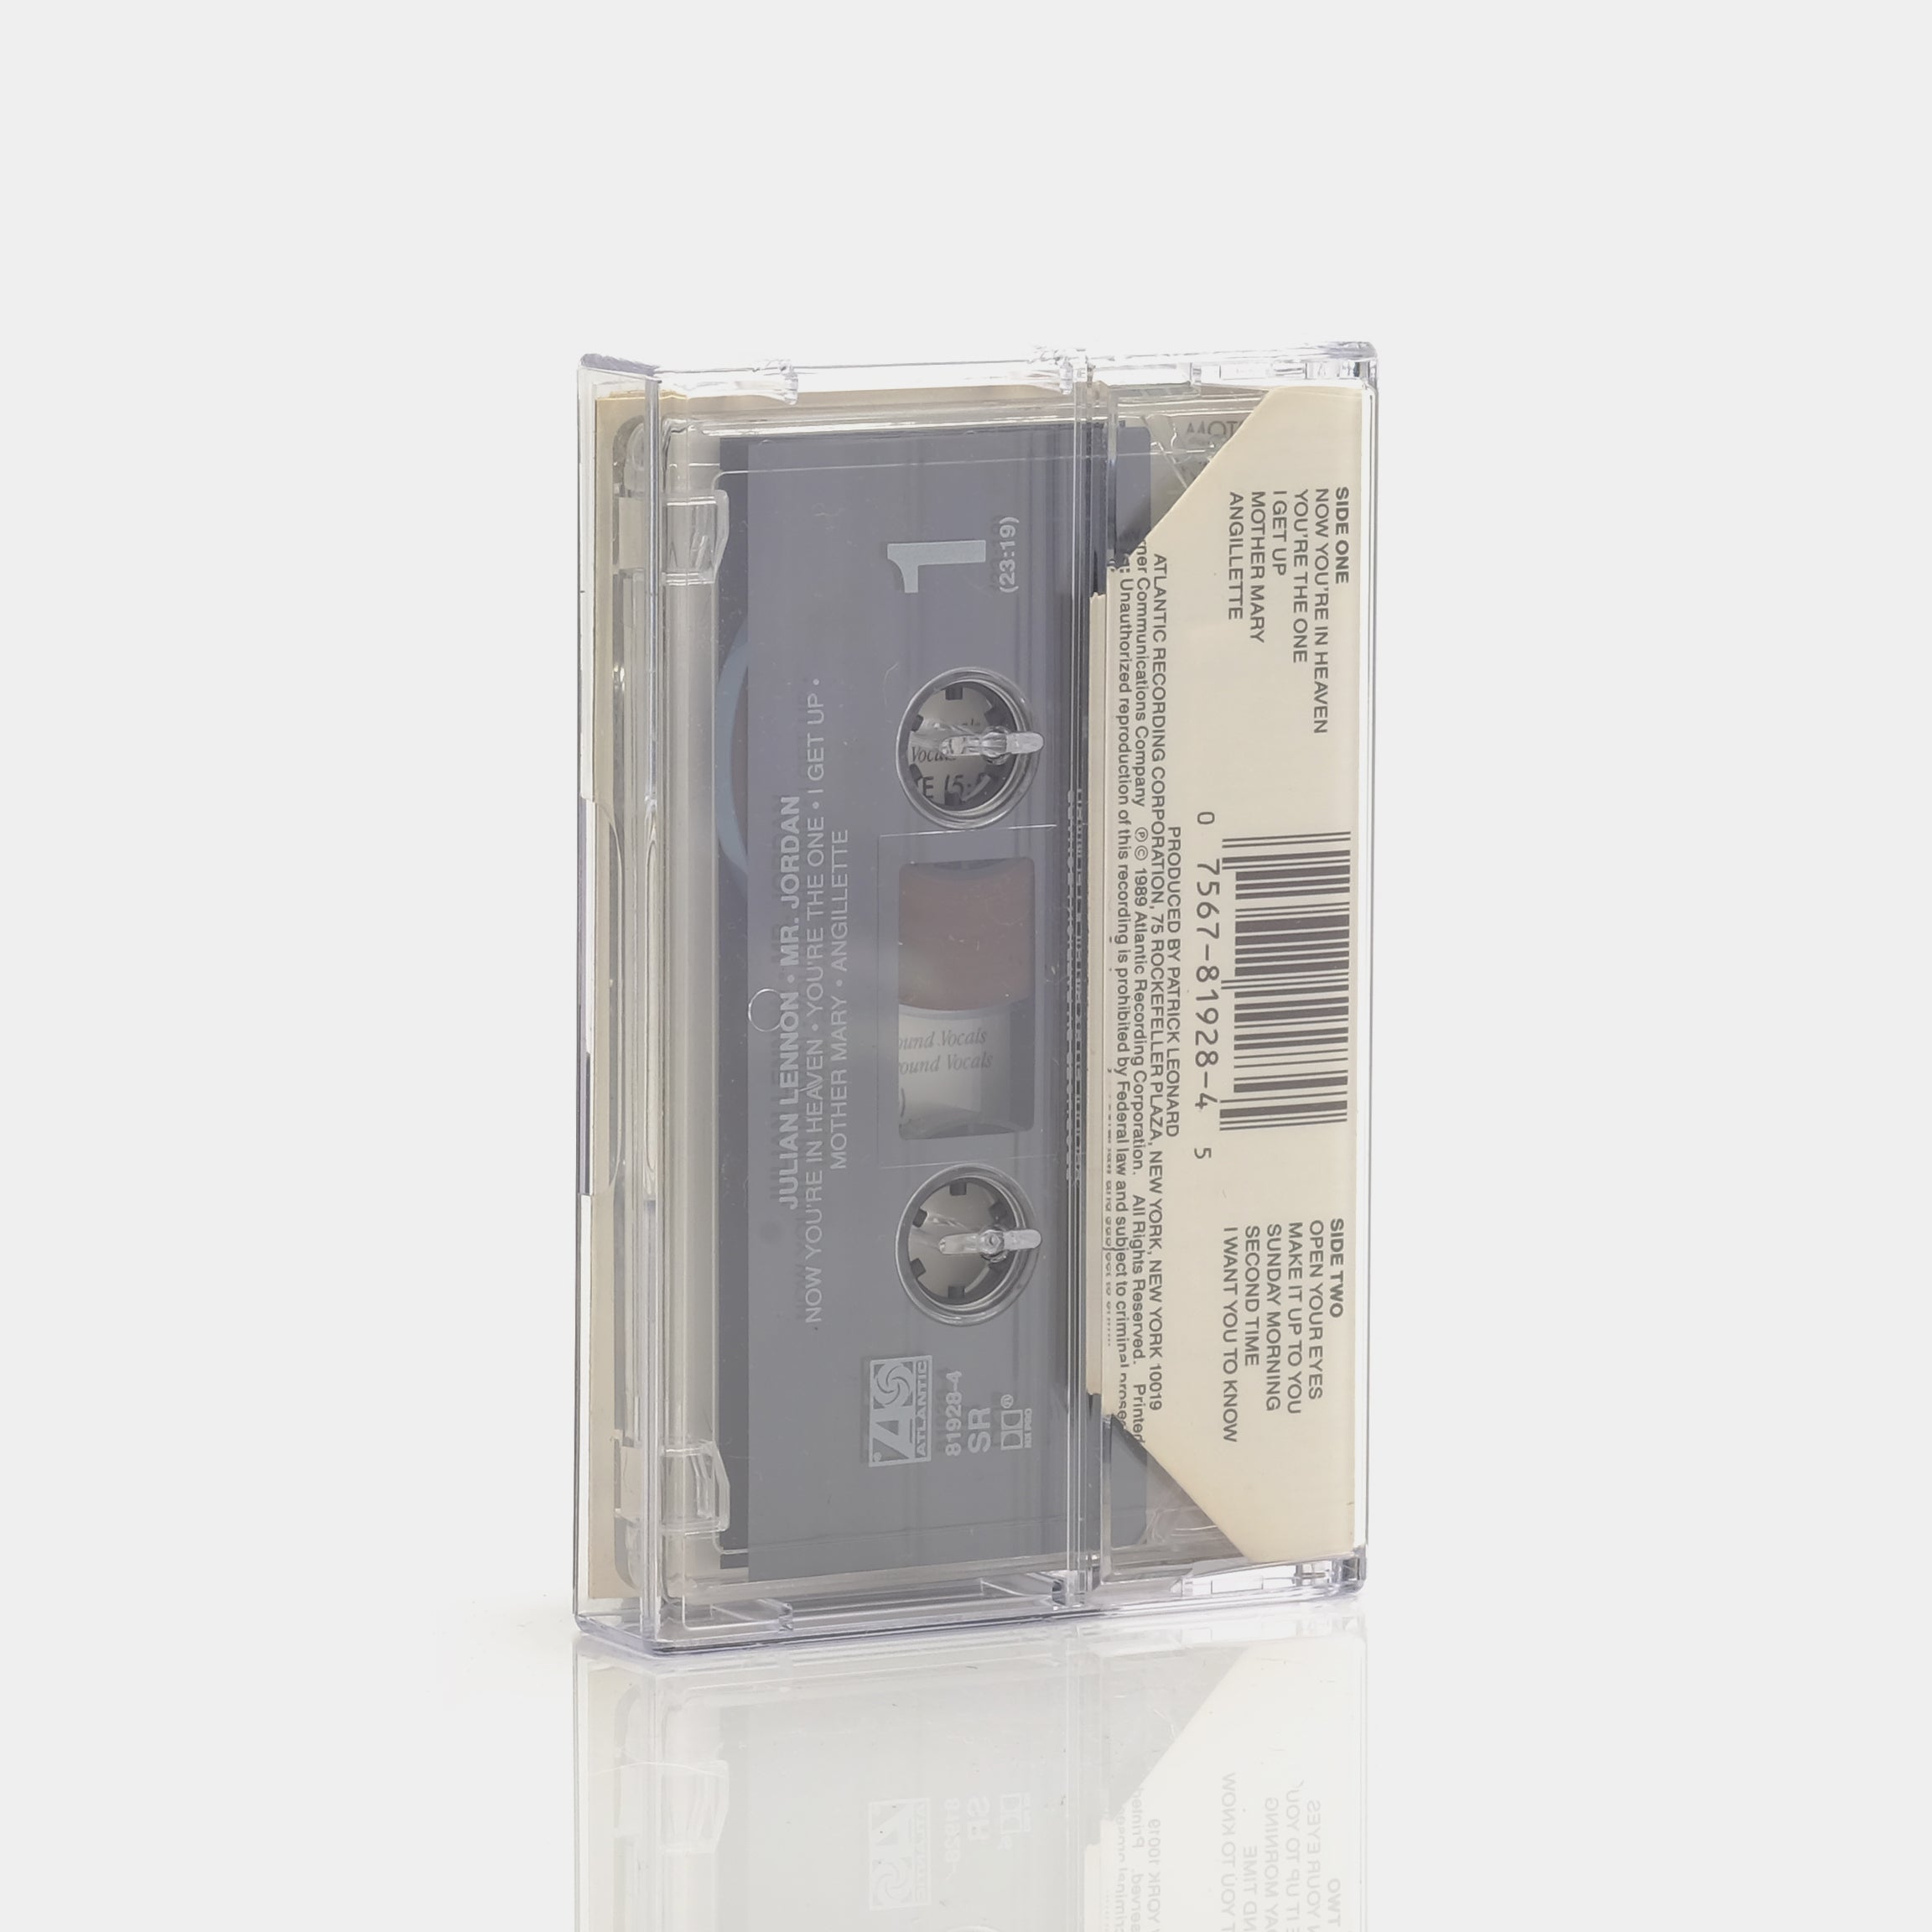 Julian Lennon - Mr. Jordan Cassette Tape